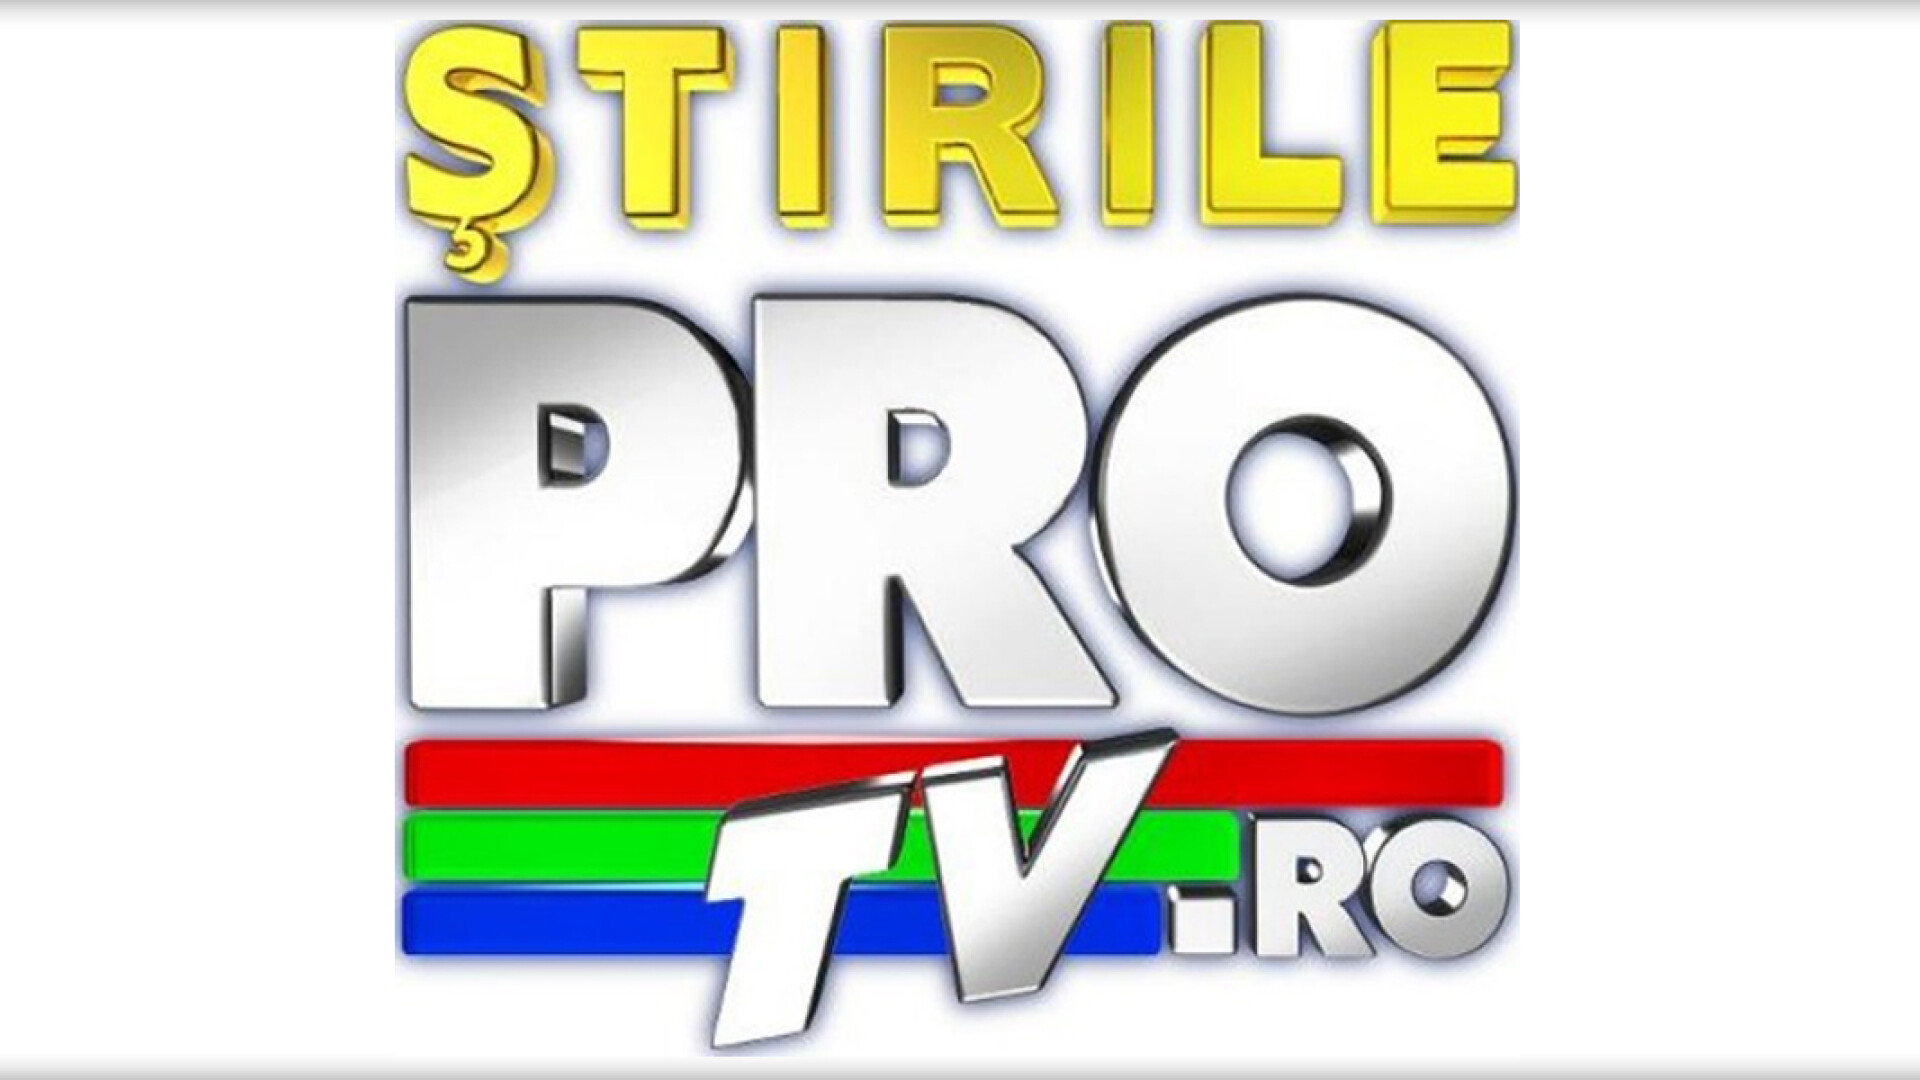 logo www.stirileprotv.ro